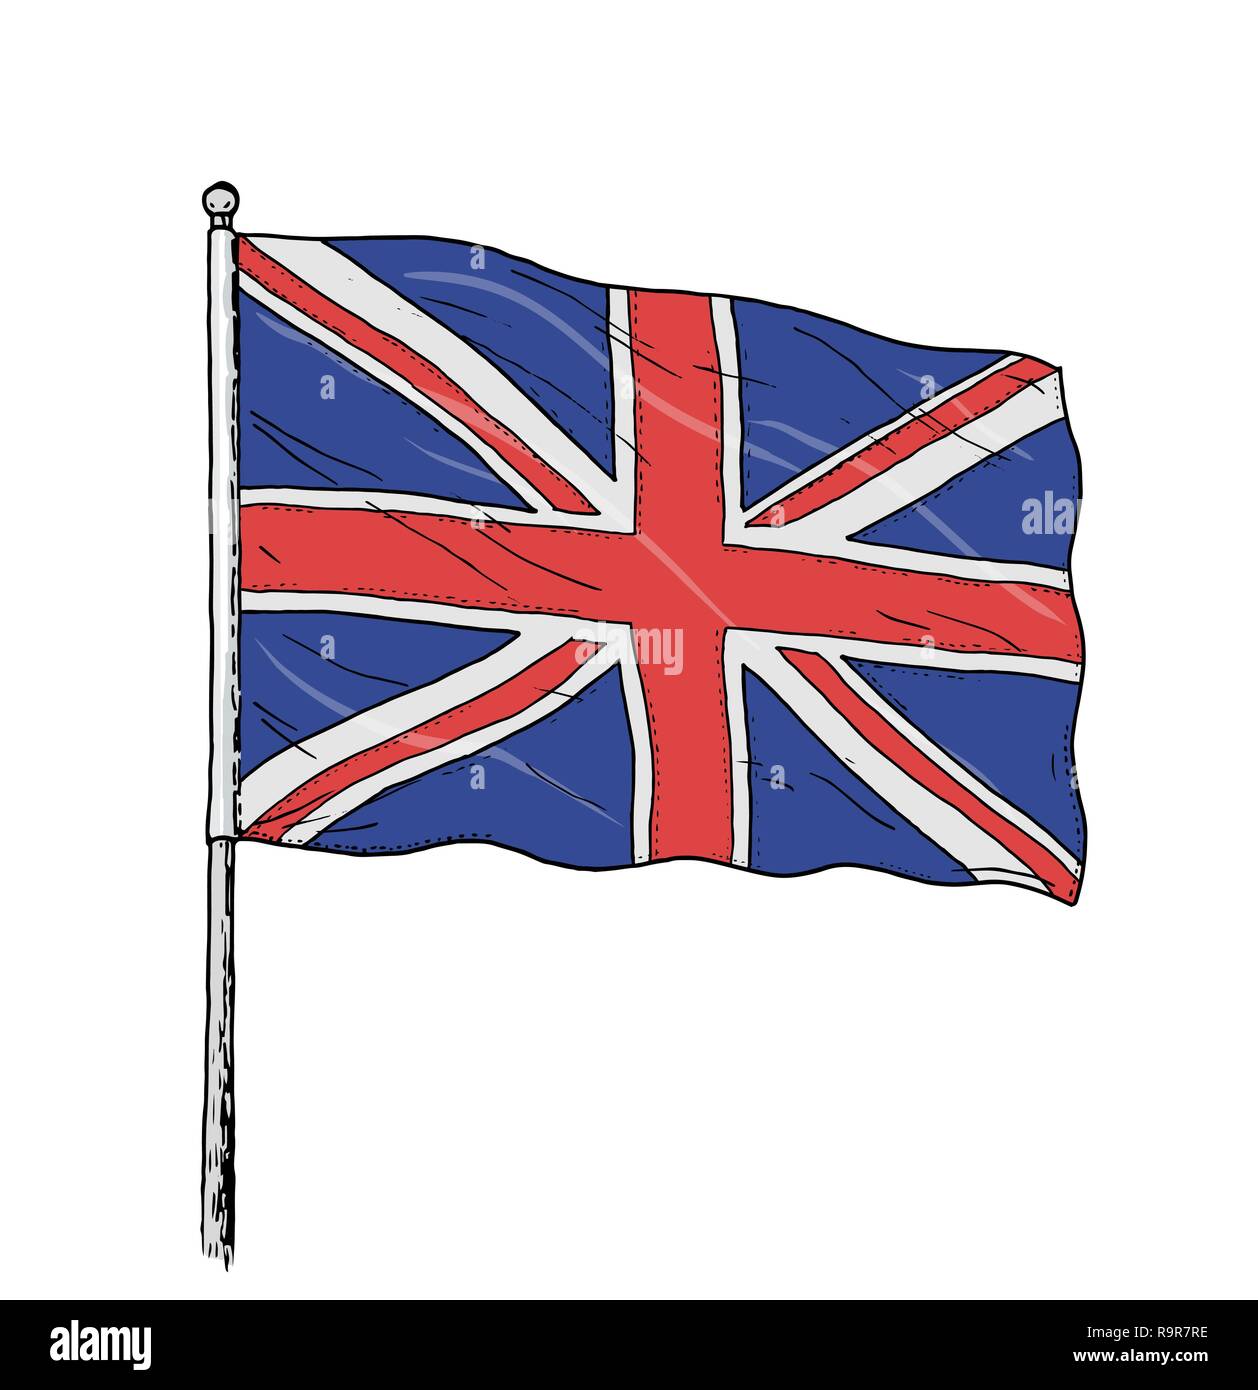 Flagge des Vereinigten Königreichs farbige Zeichnung - vintage wie Abbildung: Britische Flagge - Union Jack. Kontur auf weißem Hintergrund. Stock Vektor